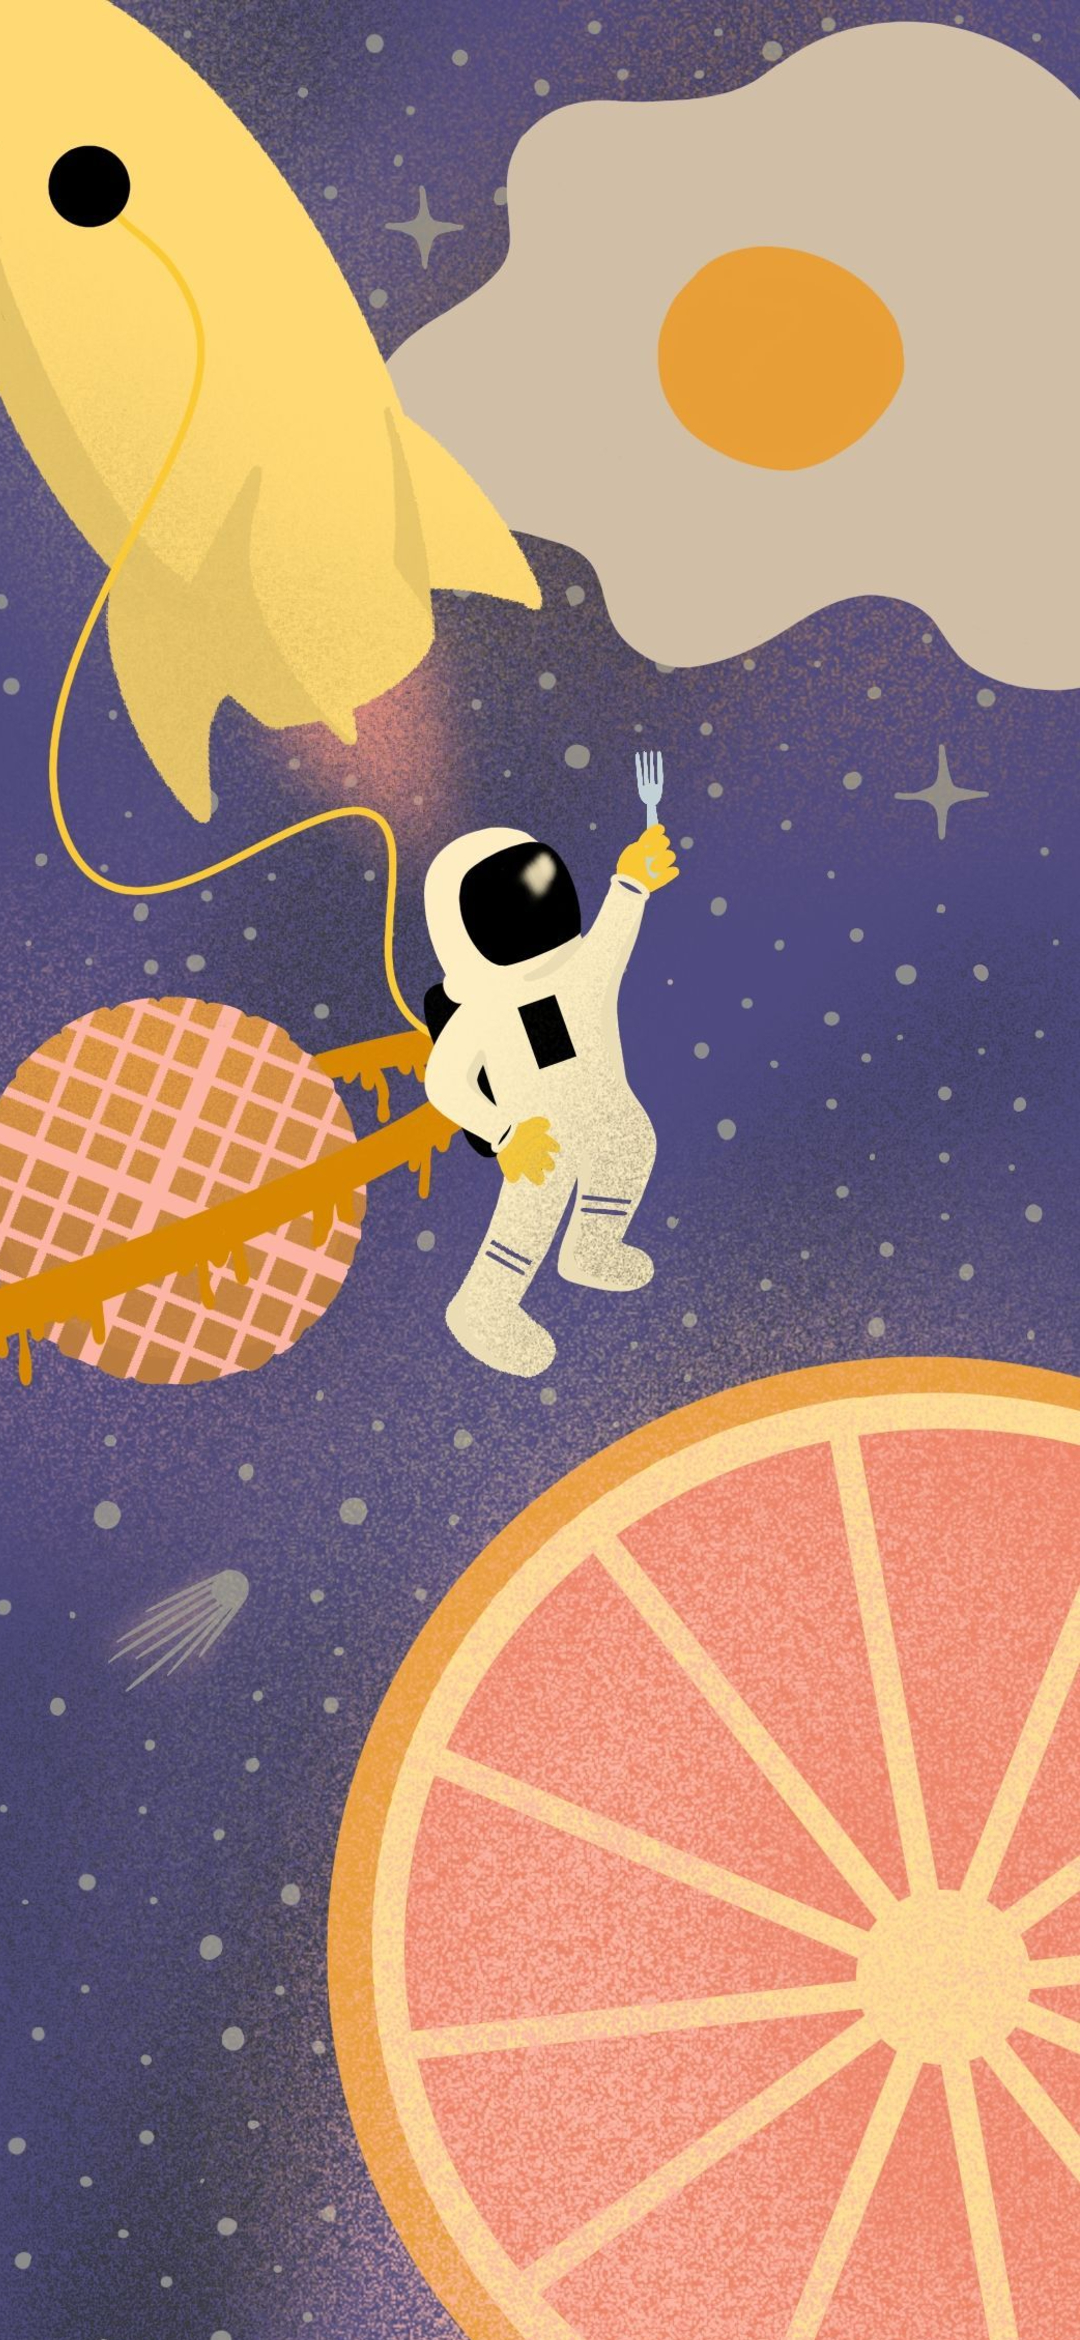 可愛い宇宙飛行士のイラスト Google Pixel 4a Android 壁紙 待ち受け スマラン